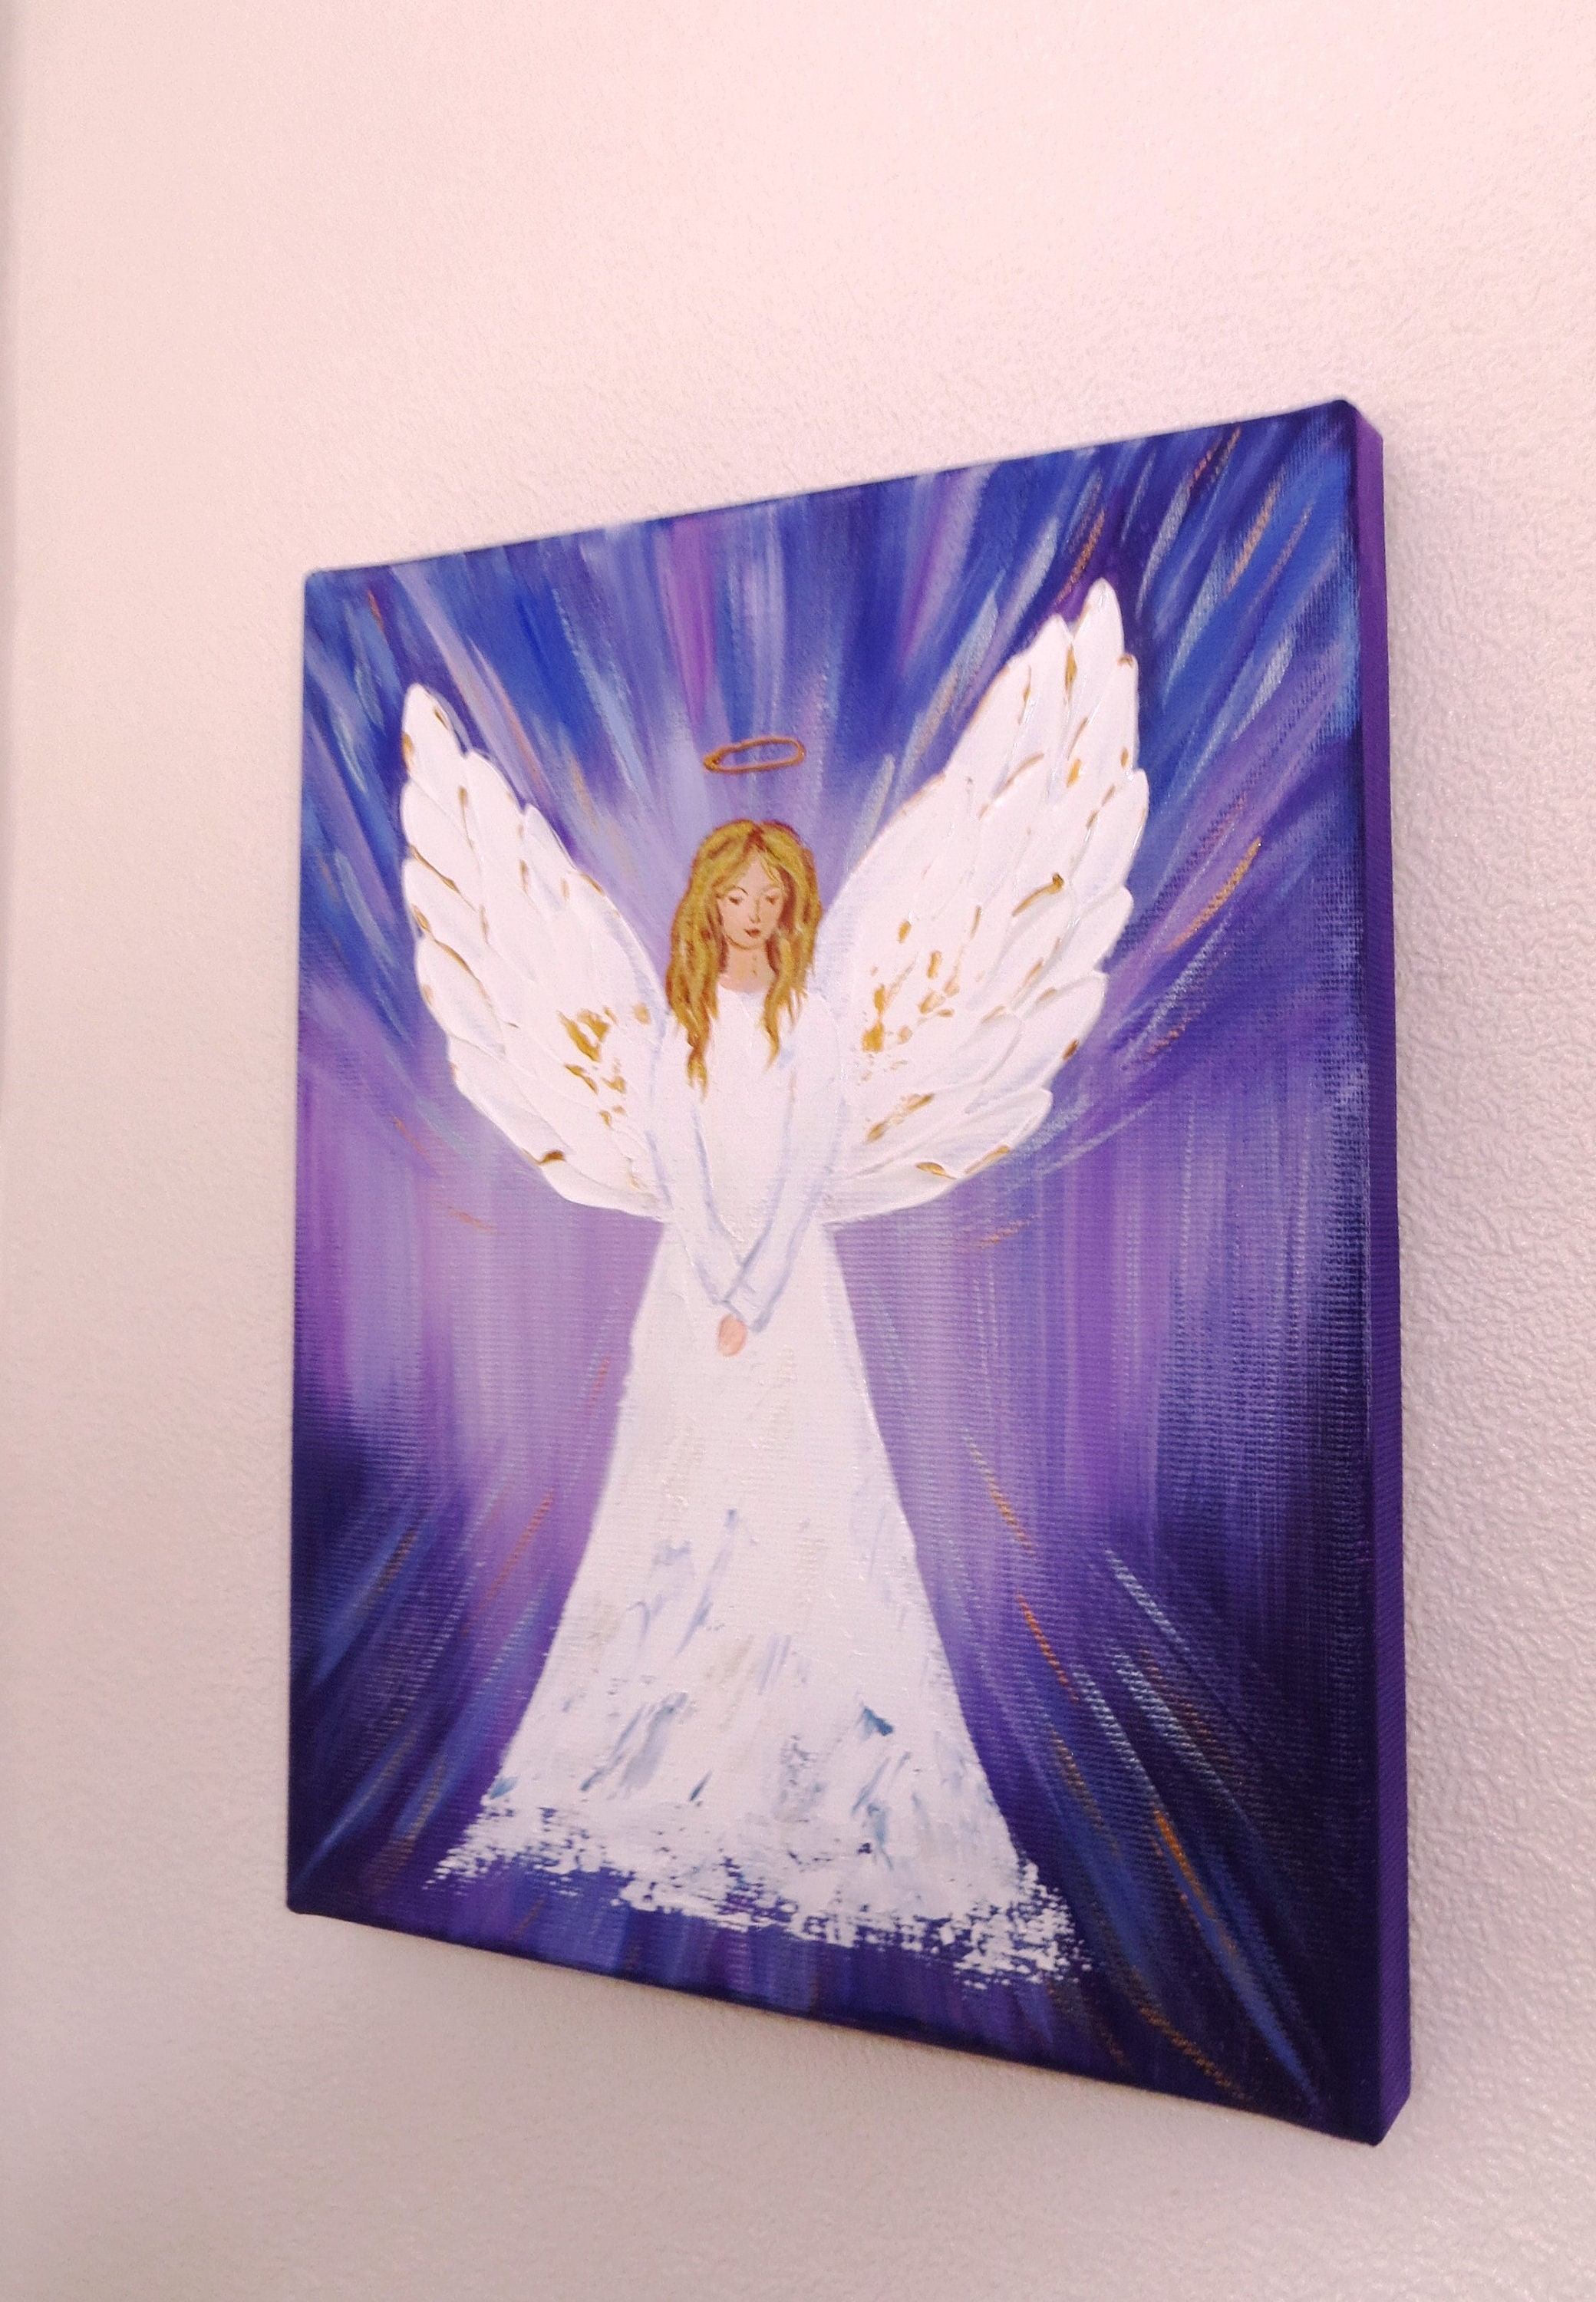 Original Engelbild Schutzengel Bild Engel auf Leinwand Engel auf Leinwand  Engelbild Engelbild Weihnachtsgeschenk Taufe Geschenk für Kind